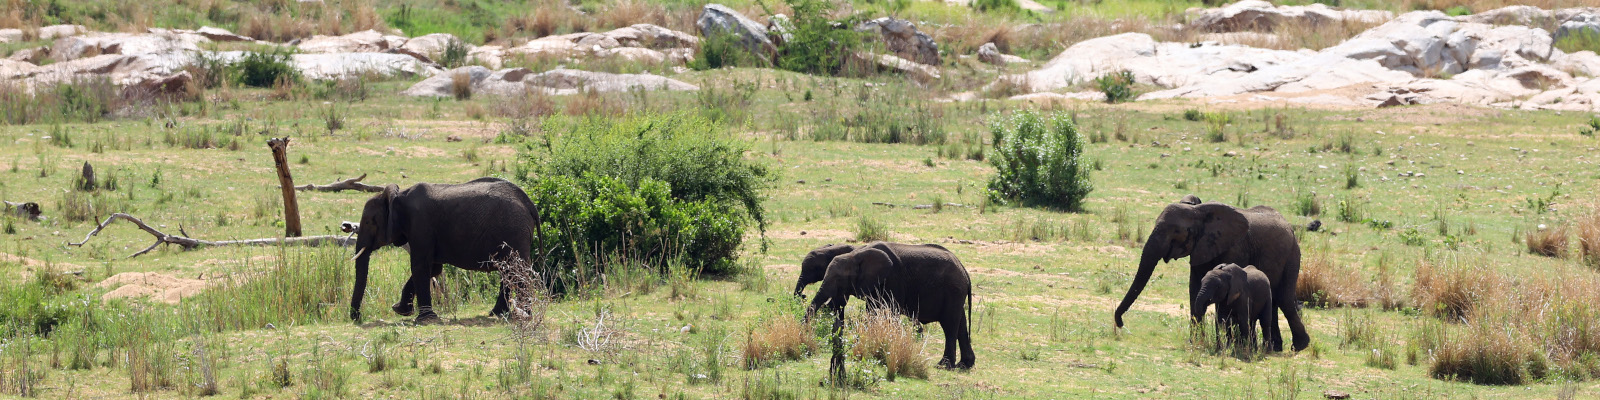 Elefanten im Kruger National Park (Photo by Getty Images)